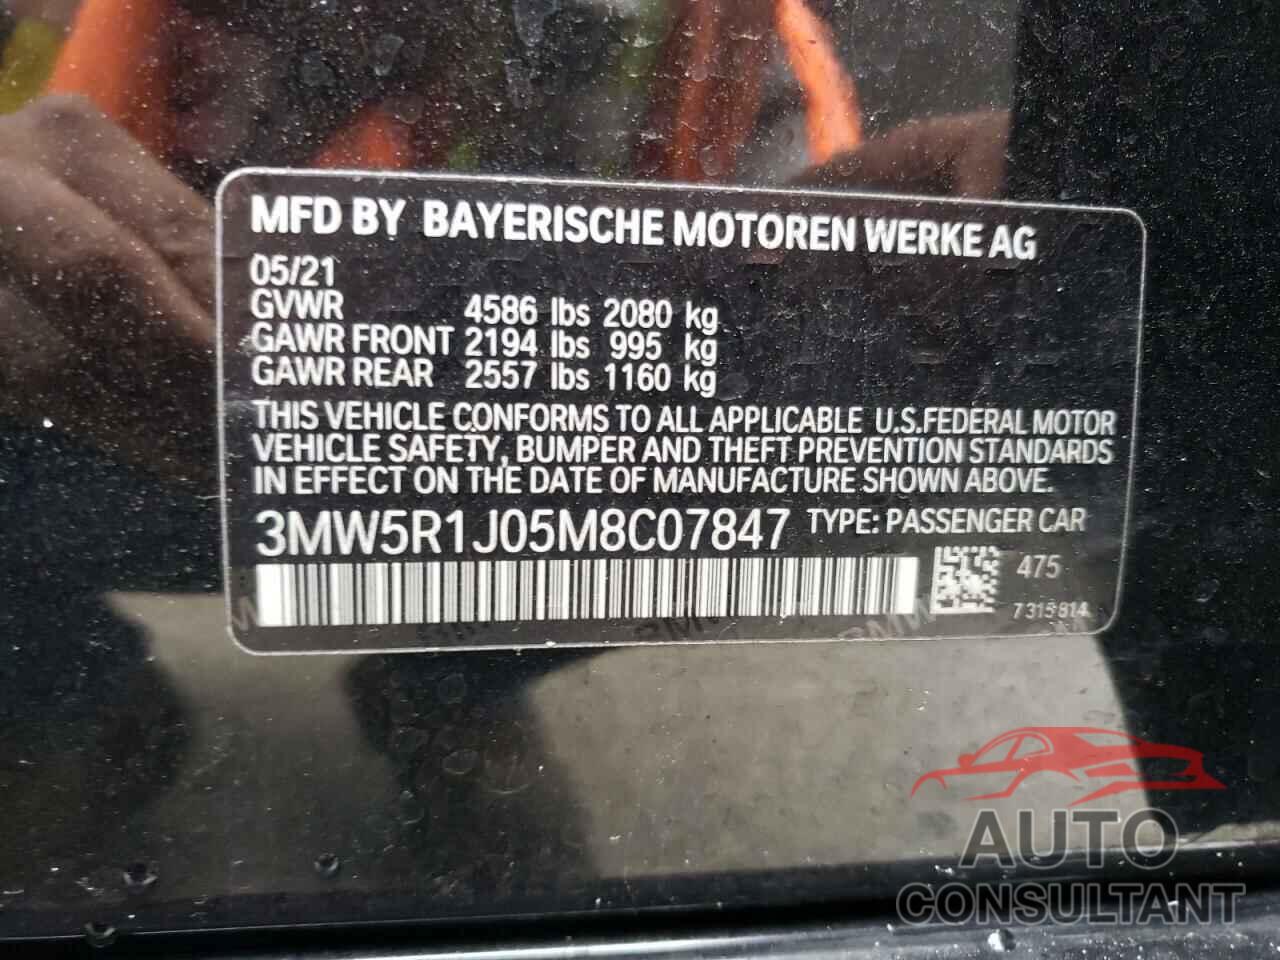 BMW 3 SERIES 2021 - 3MW5R1J05M8C07847